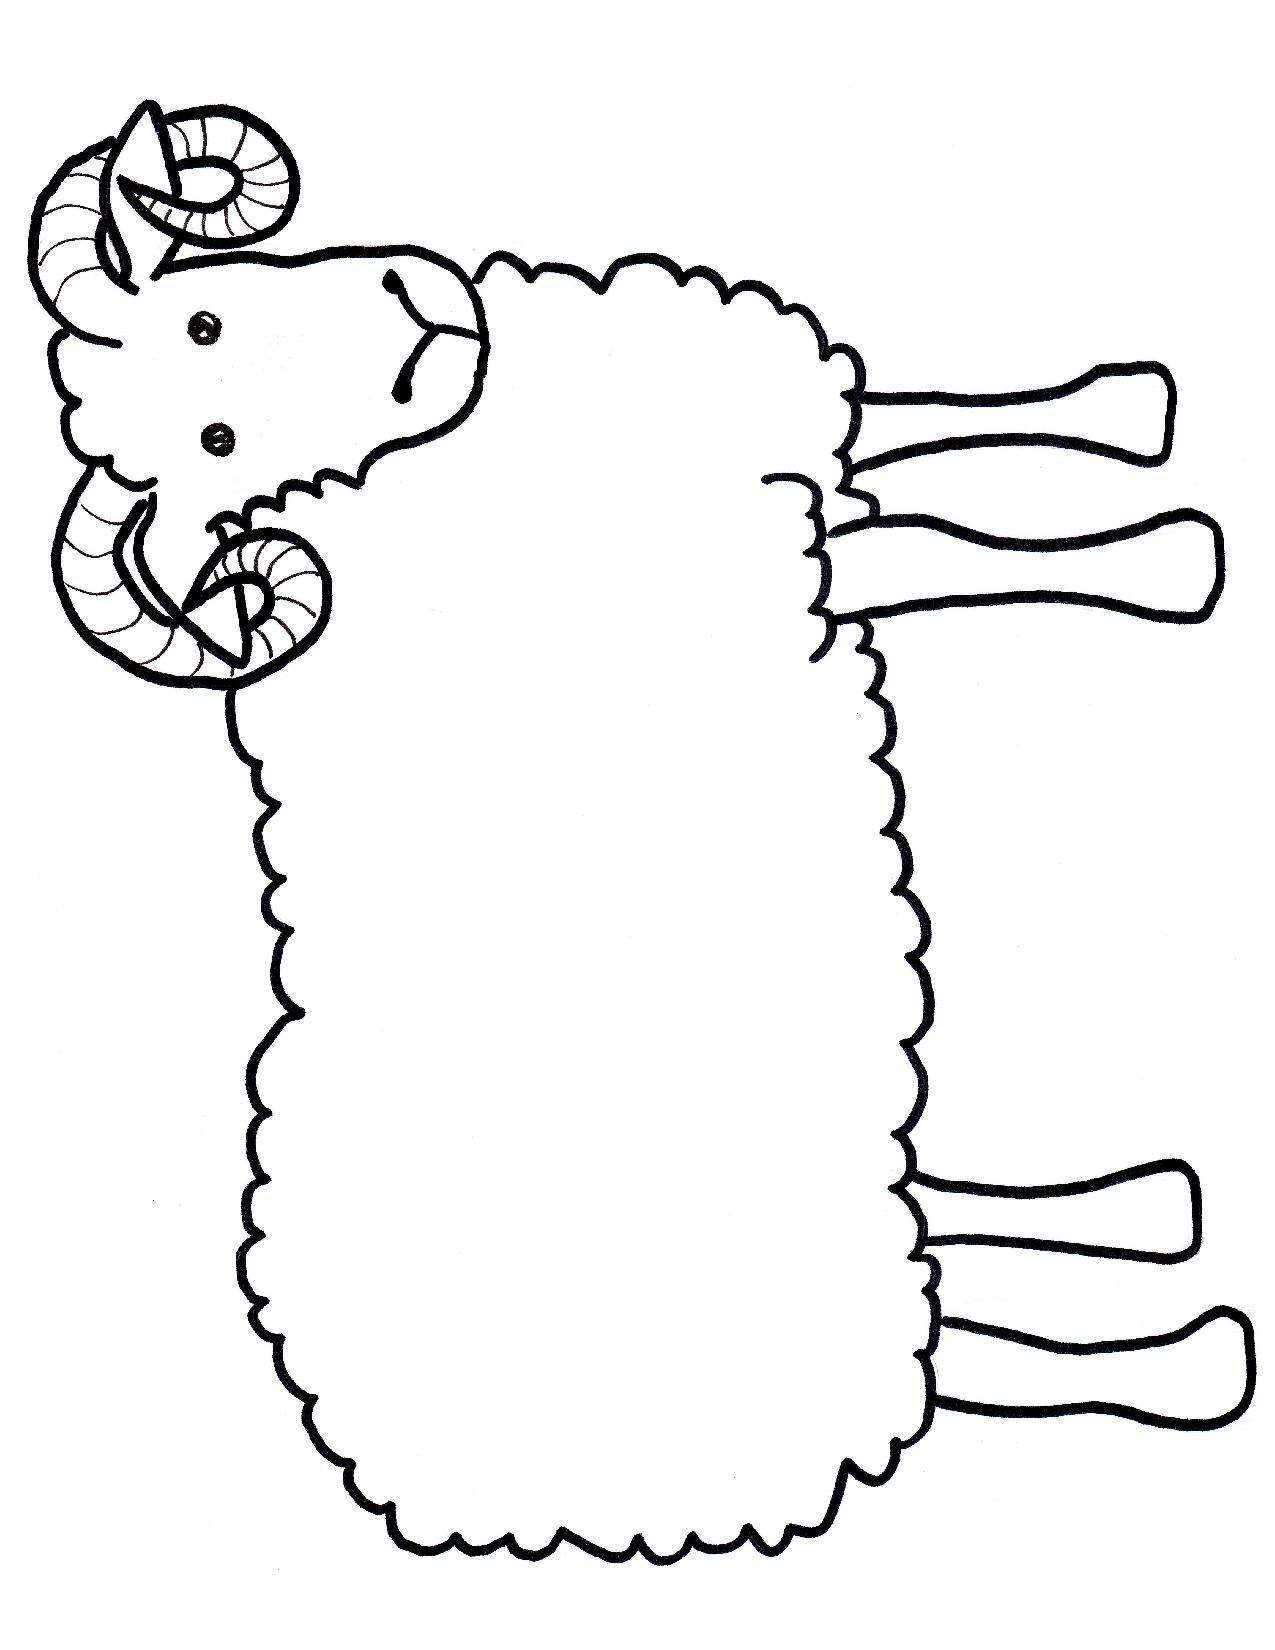 sheep-printable-template